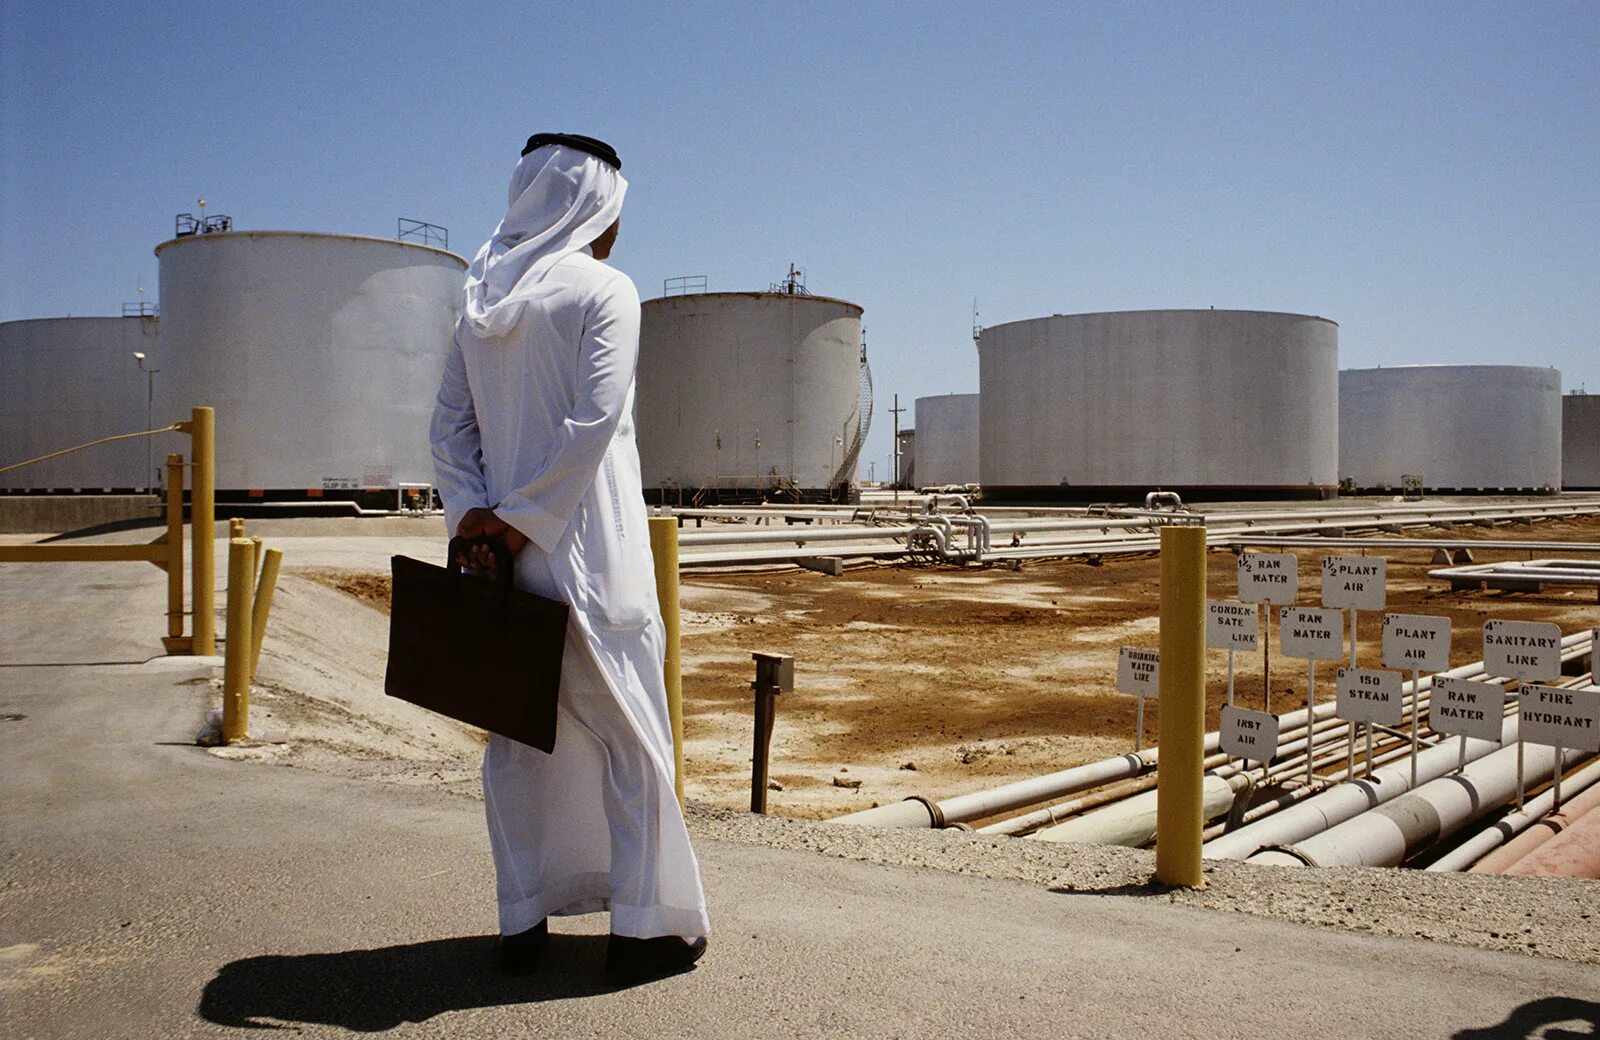 Саудовская Аравия нефть Saudi Aramco. Нефтяная компания в Саудовской Аравии Aramco. Добыча нефти Сауди Арамко. Завод в Саудовской Аравии Арамко. Цены нефть саудовская аравия